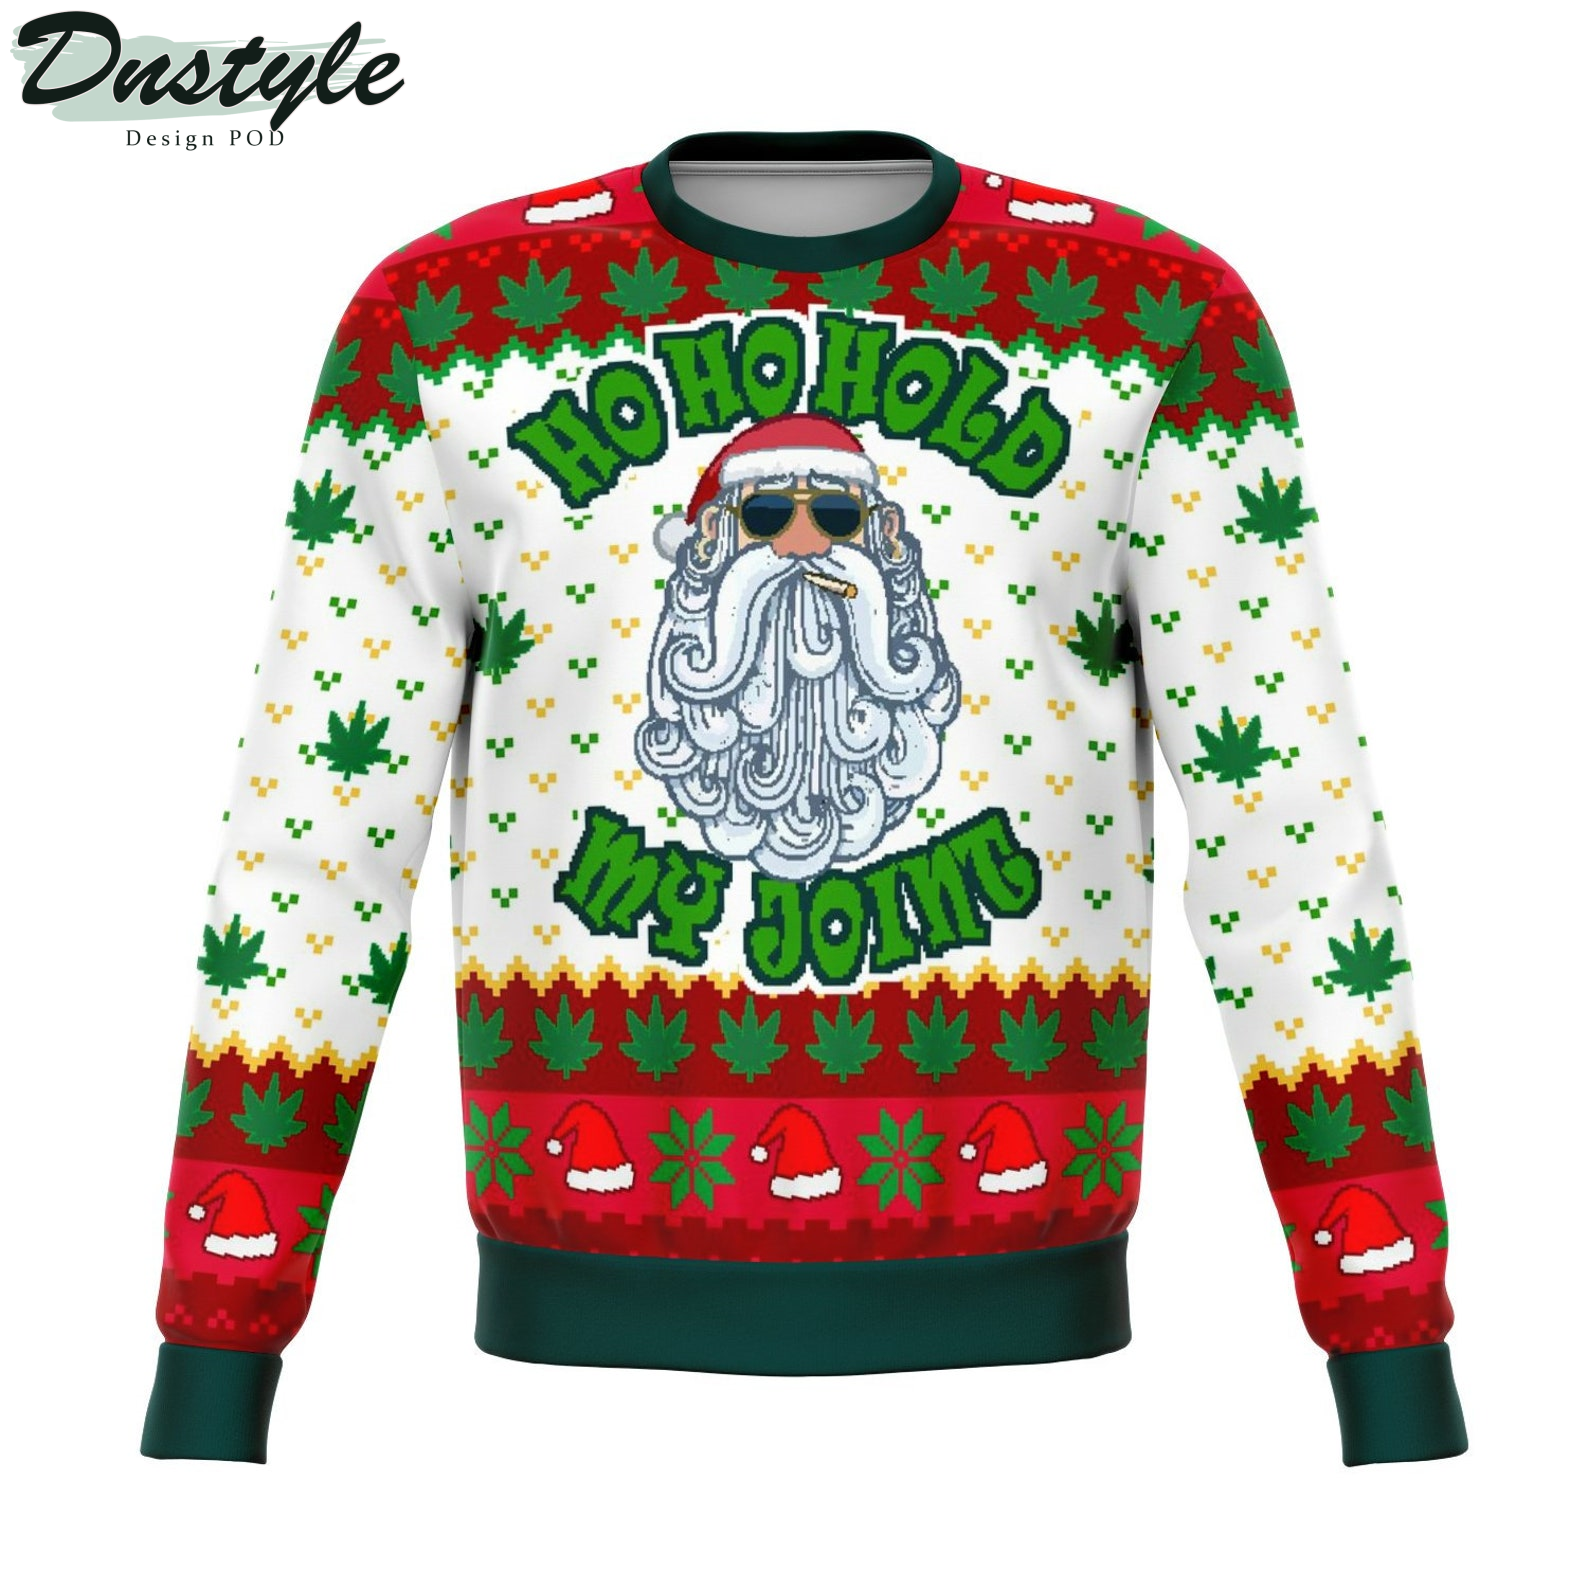 Ho Ho Ho My Joint 2022 Ugly Christmas Sweater